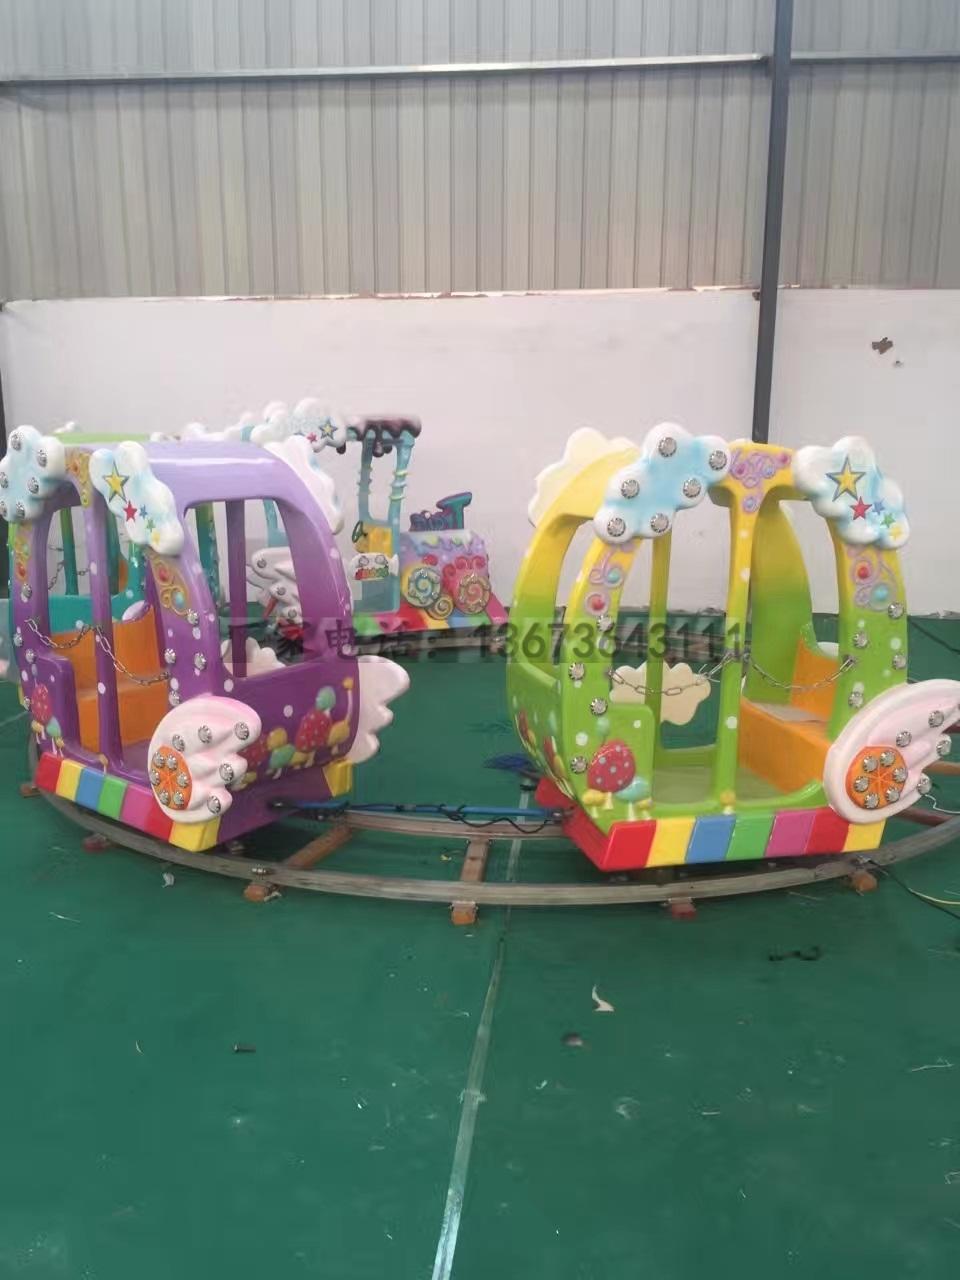 儿童游乐园游乐设备新款水果飞椅 卡通水果造型西瓜飞椅游乐游艺设施厂家示例图48